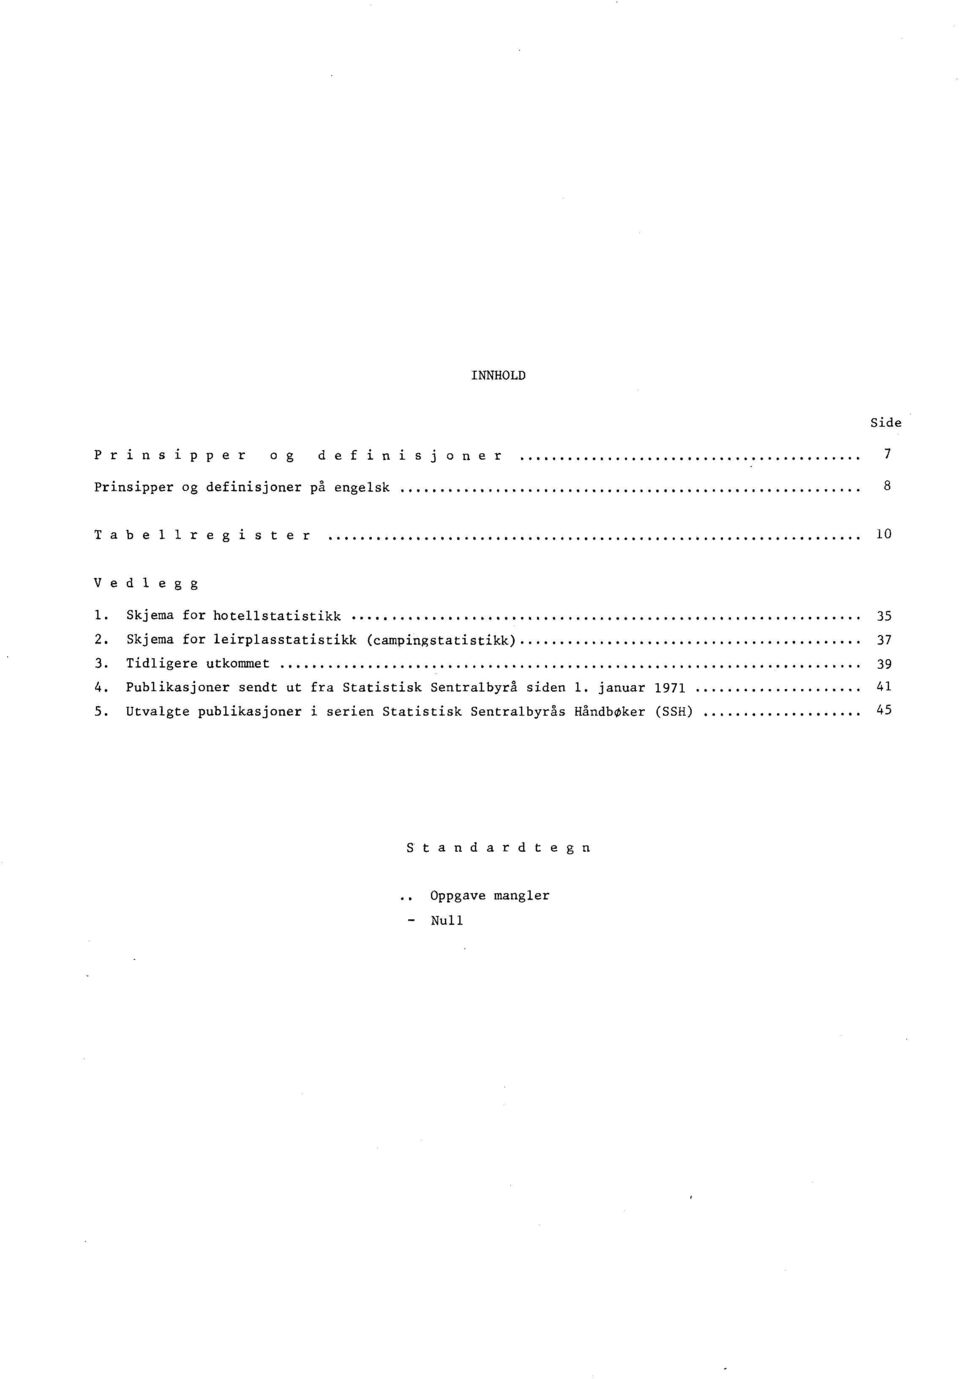 Tidligere utkommet 39 4. Publikasjoner sendt ut fra Statistisk Sentralbyrå siden 1. januar 1971 41 5.